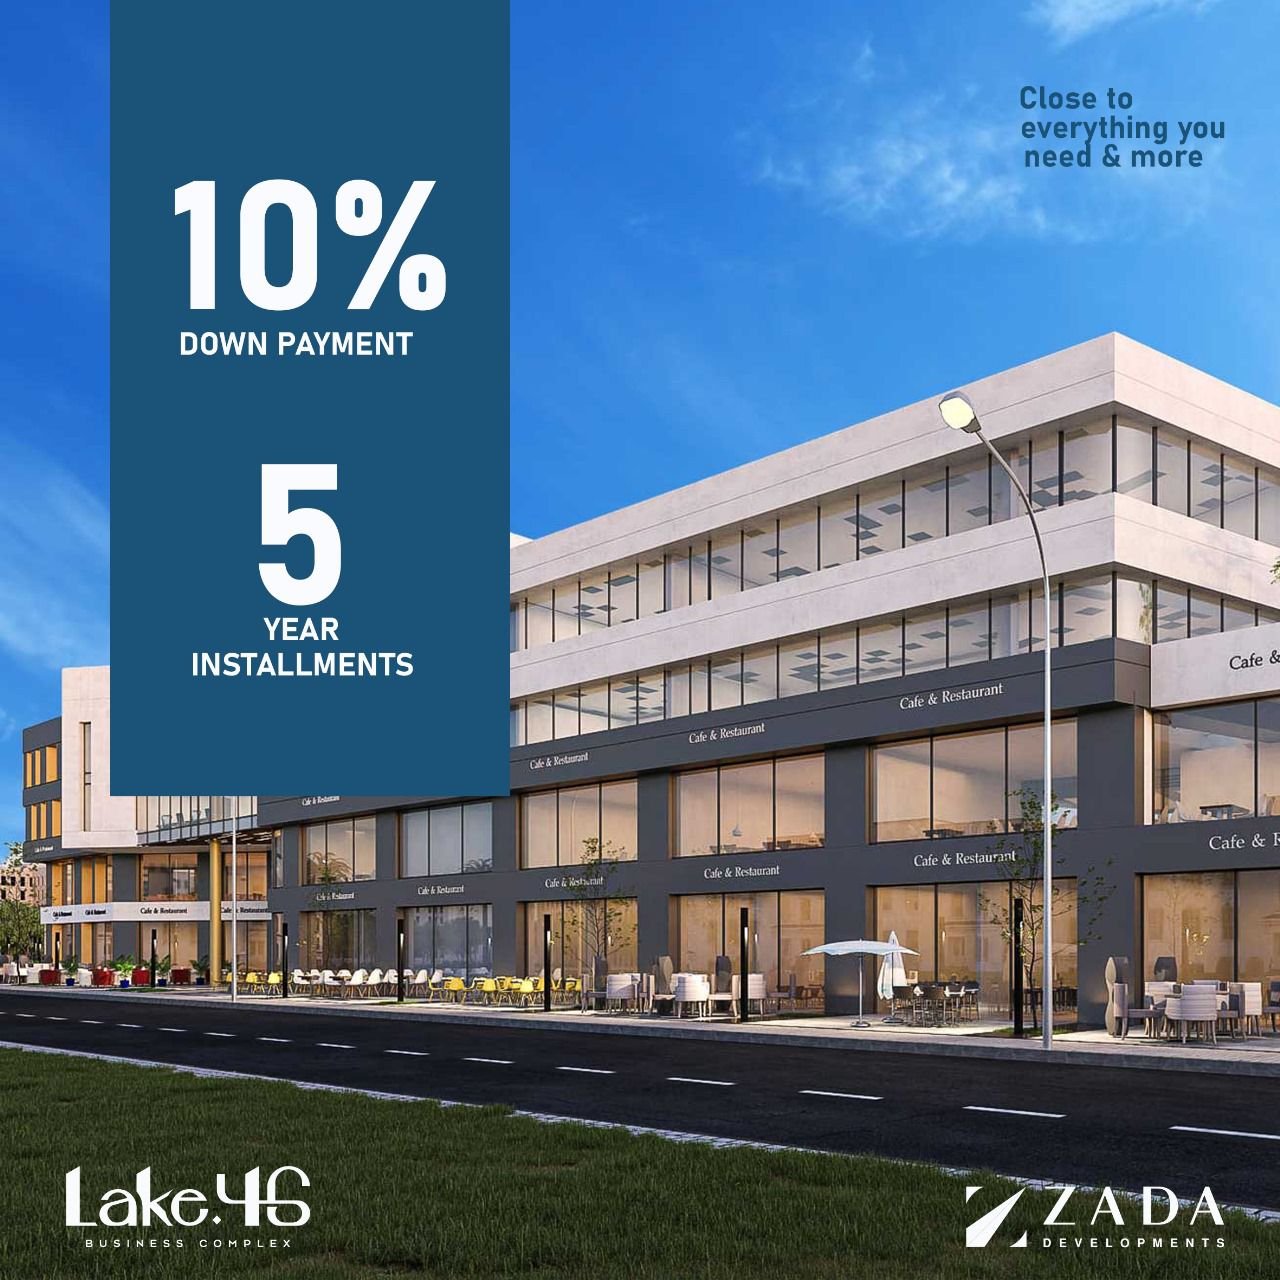 مكتب للبيع بالتقسيط في مدينة 6 أكتوبر مساحة 60 متر بمقدم 25 % و تقسيط يصل إلي 5 سنوات في مول  LAKE 46 Mall | THE PEAK PROPERTIES